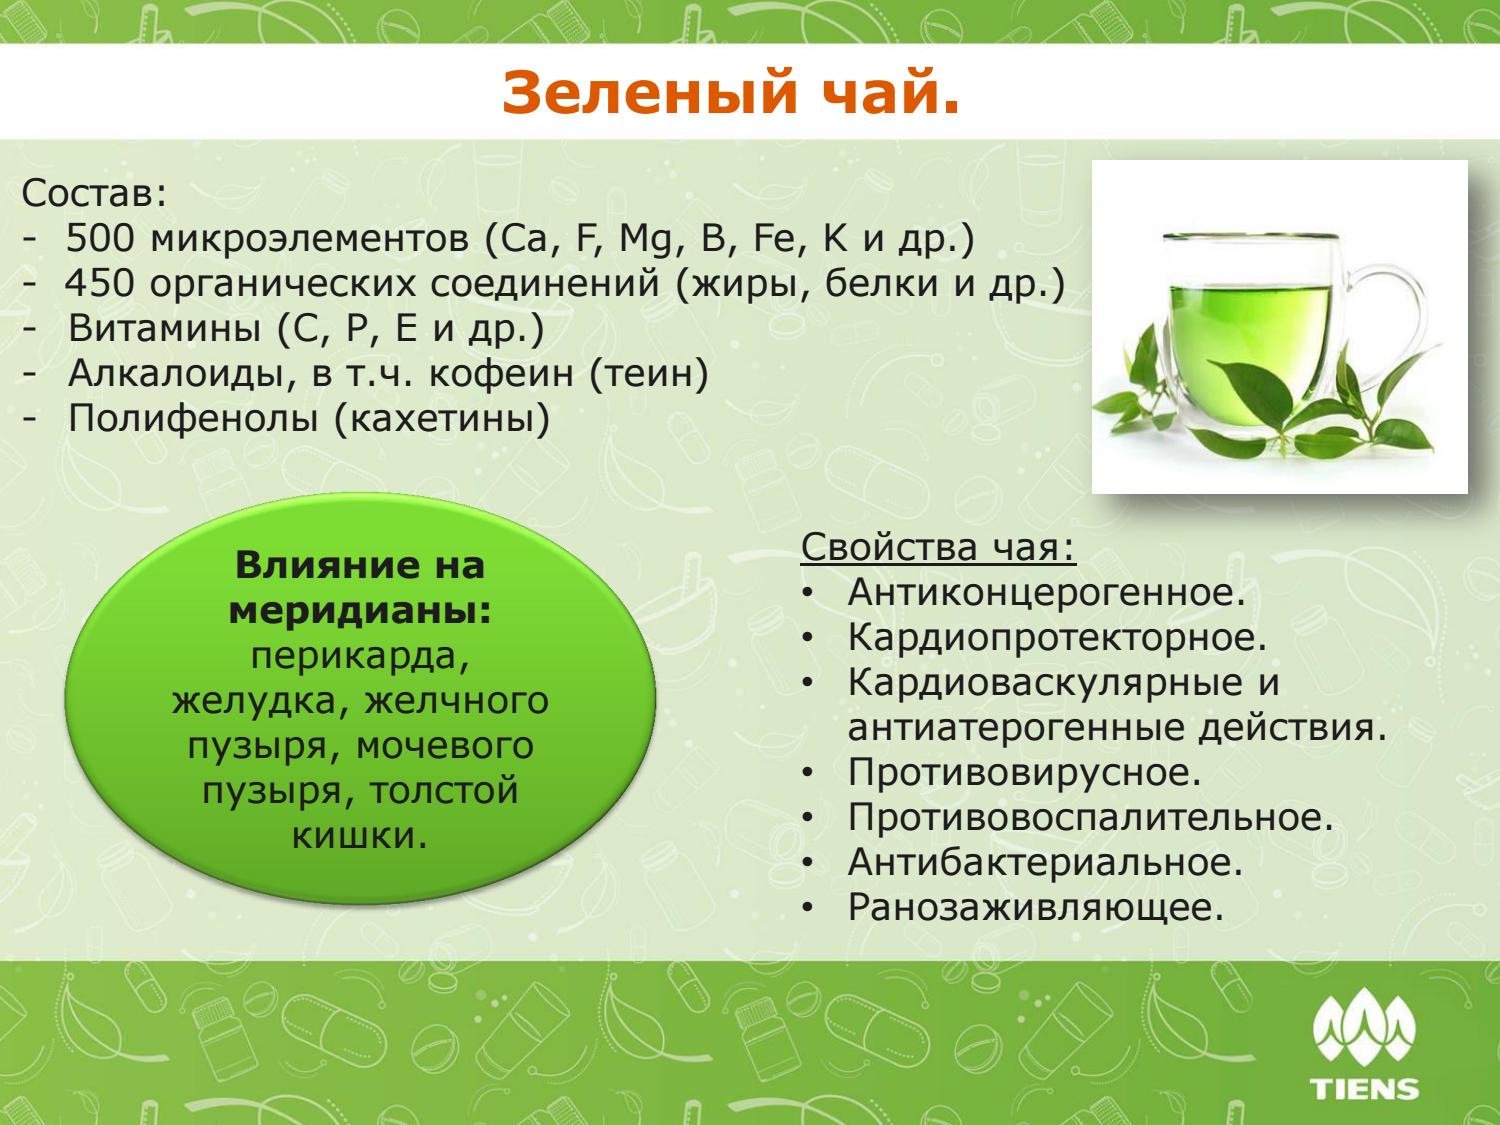 Есть ли в зеленом чае. Химический состав зеленого чая. Из чего состоит зеленый чай. Витамины в зеленом чае. Чайхимичечкий состав.